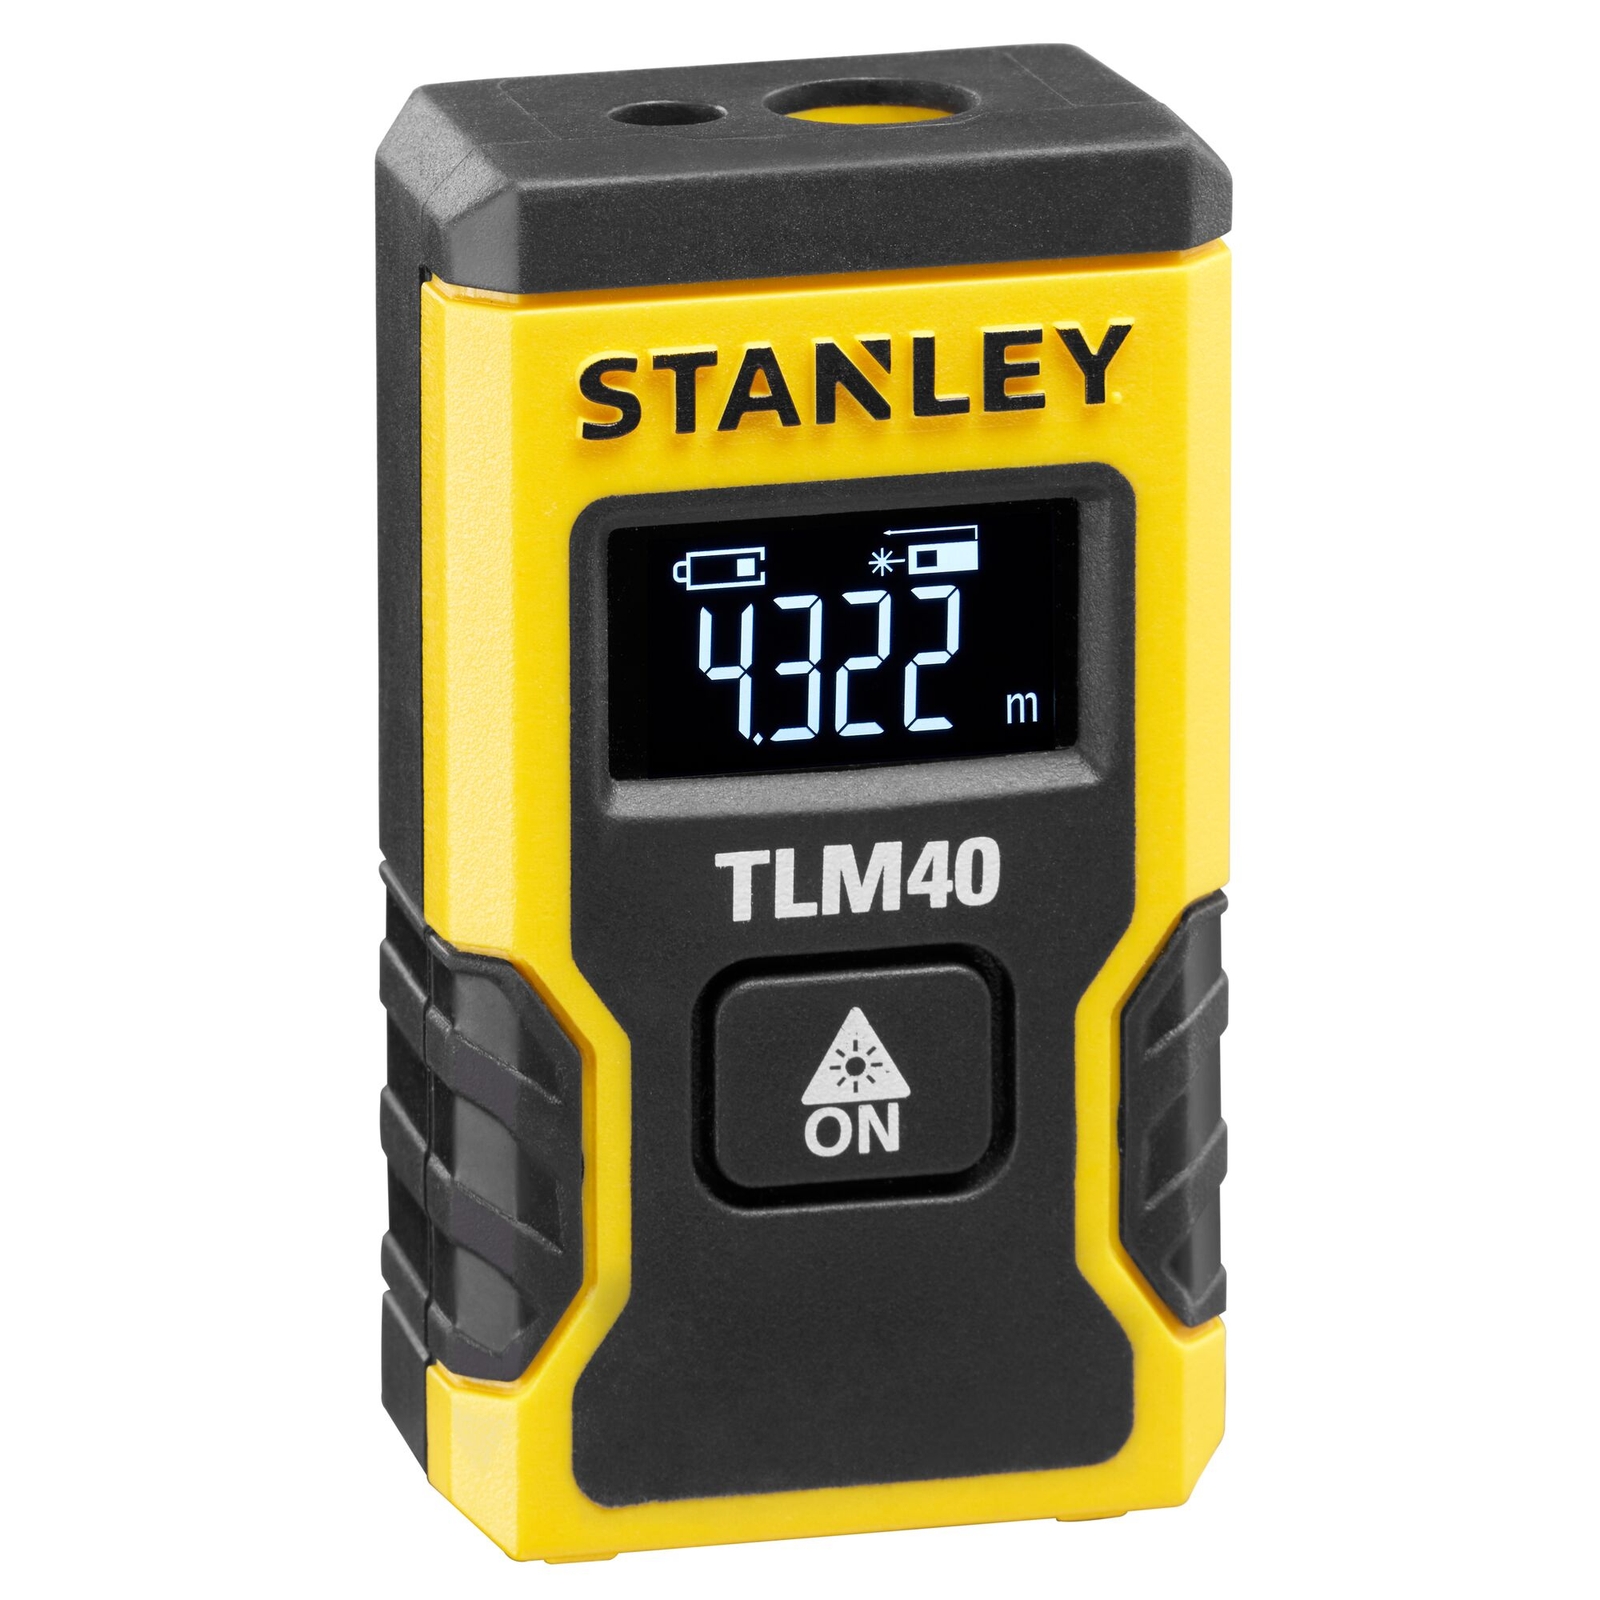 STANLEY 12m Pocket Laser Distance Measure